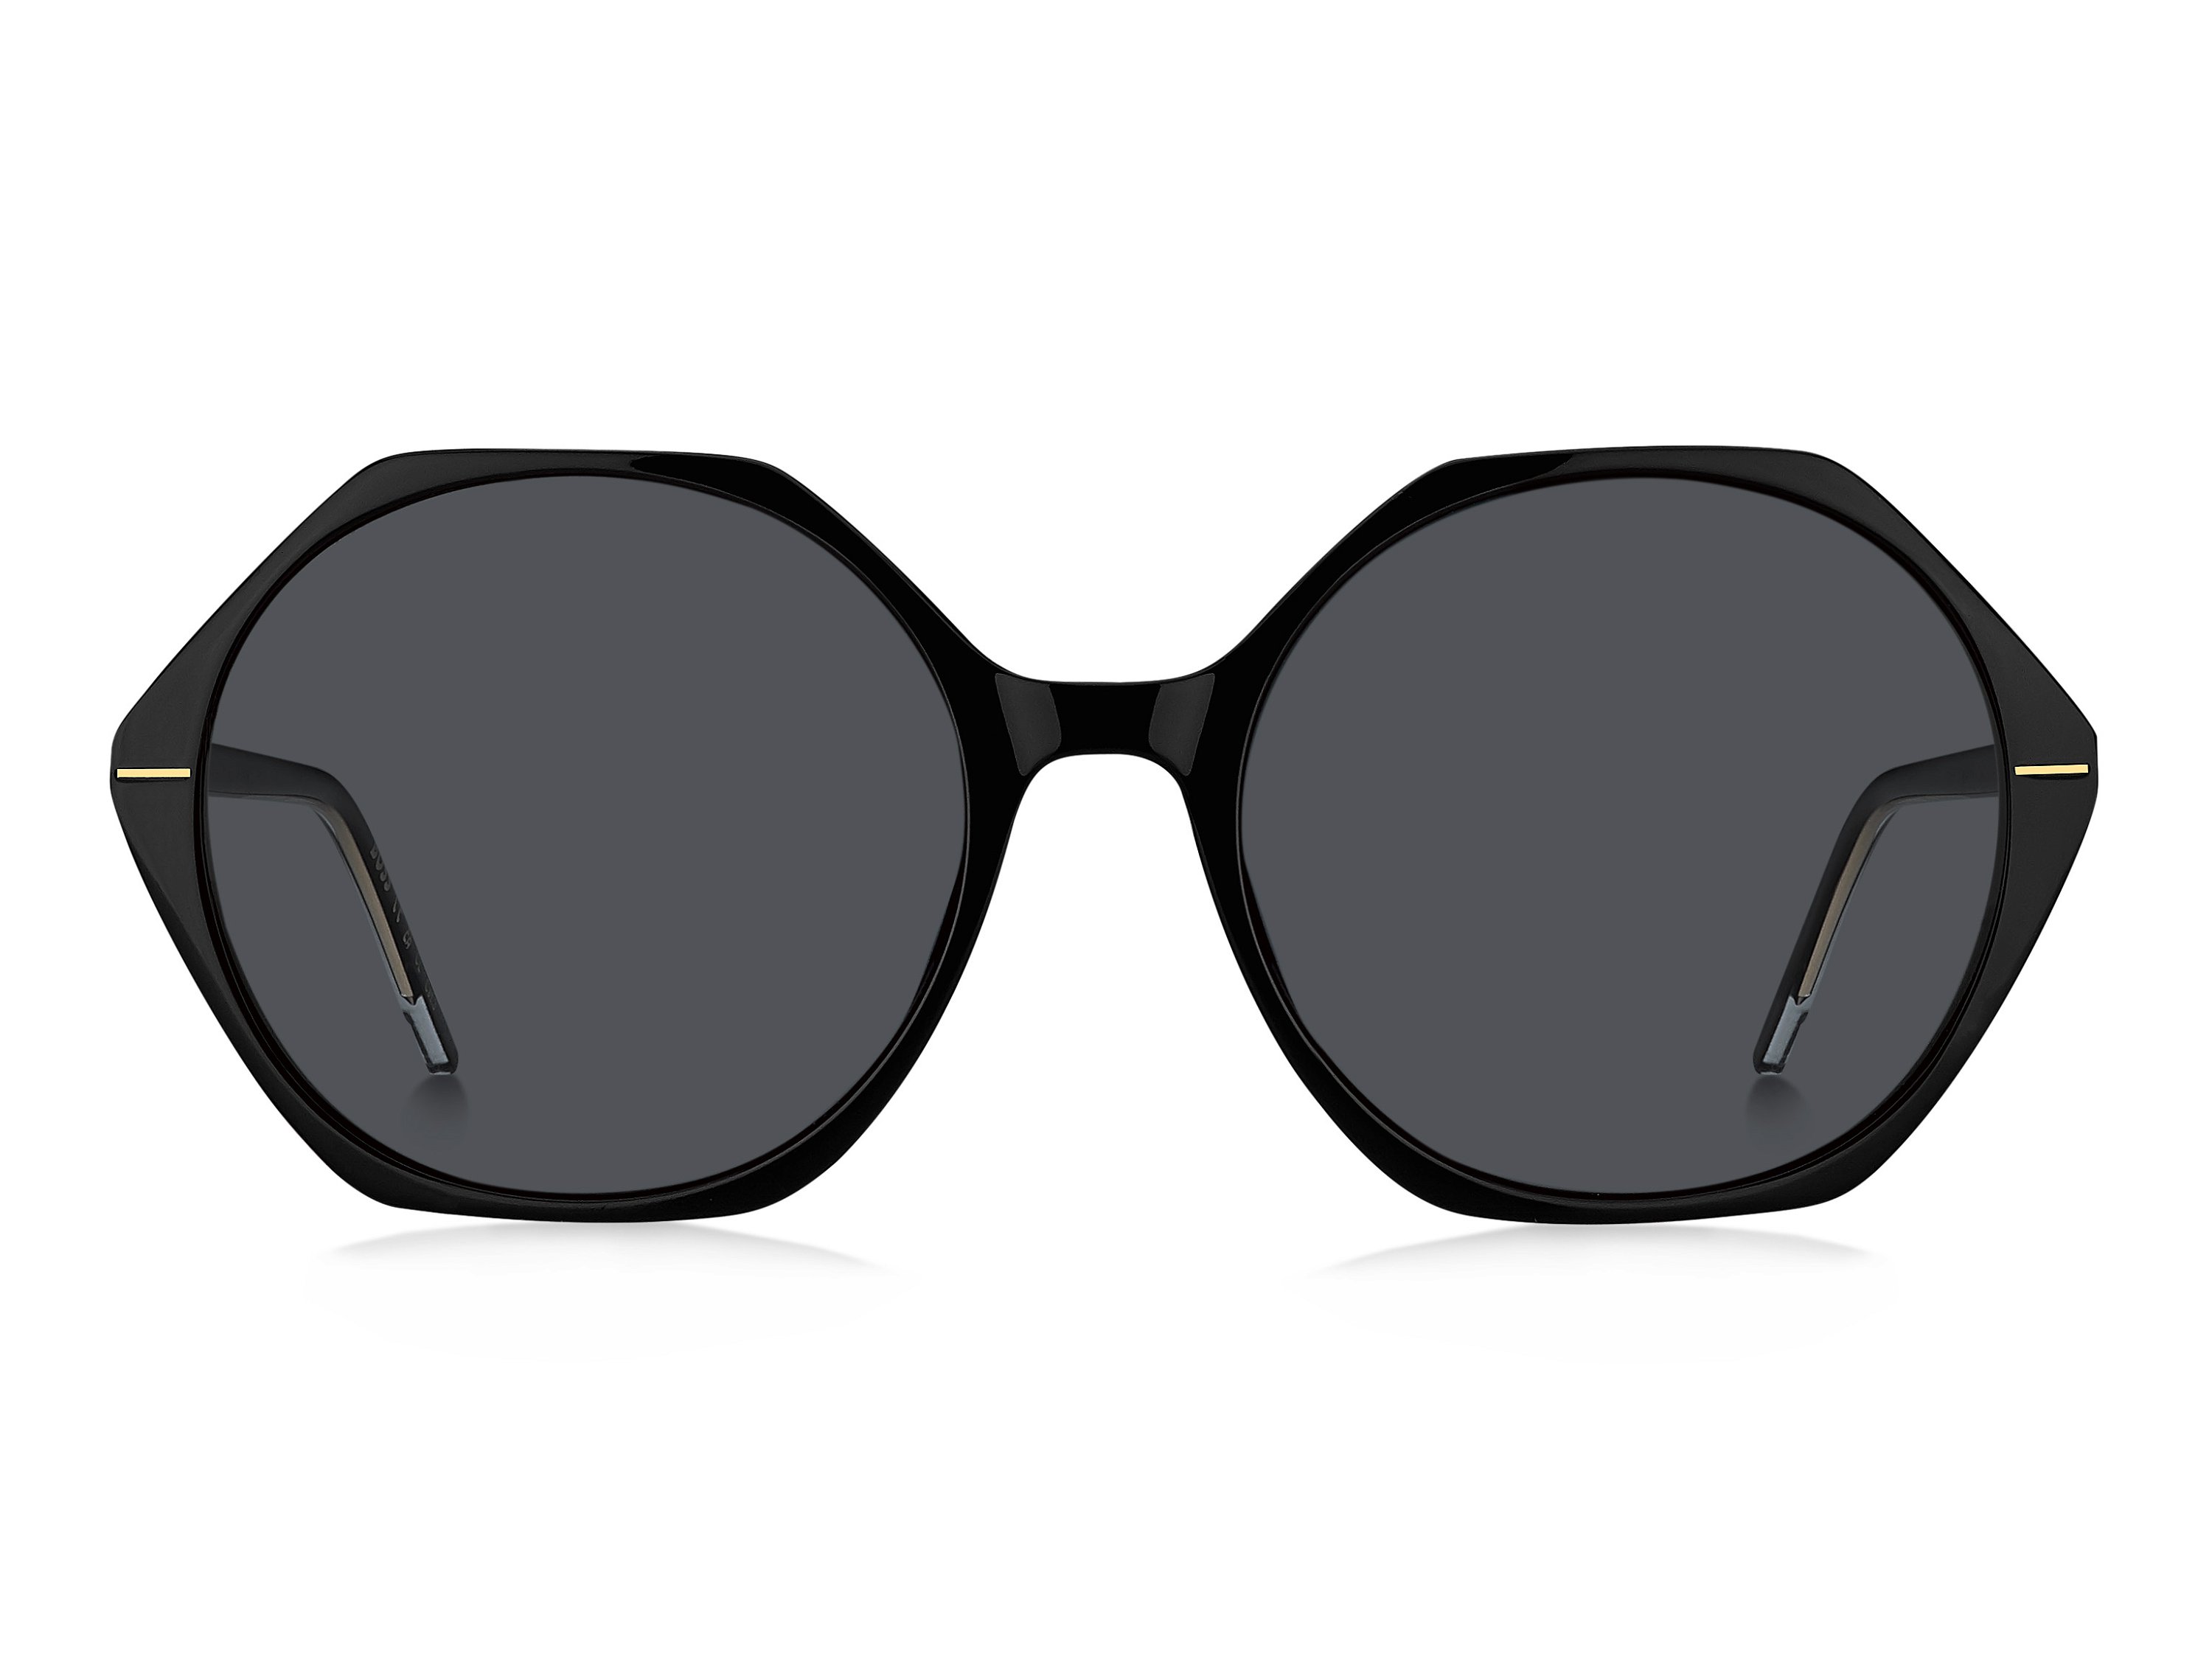 Das Bild zeigt die Sonnenbrille BOSS1585S 7C von der Marke BOSS in Schwarz.